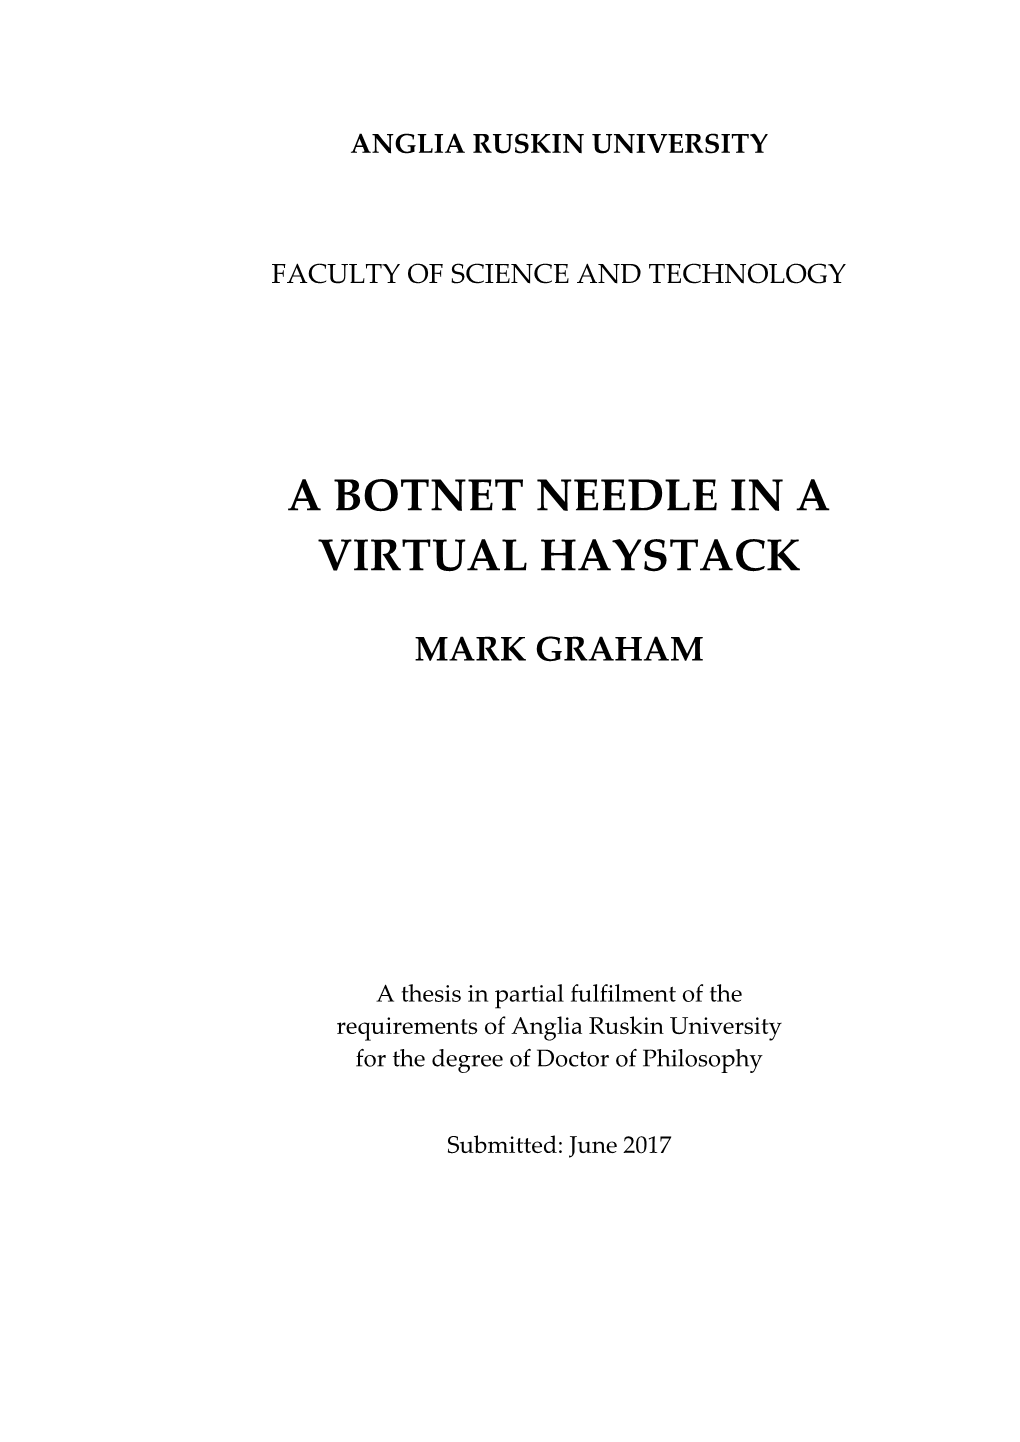 A Botnet Needle in a Virtual Haystack